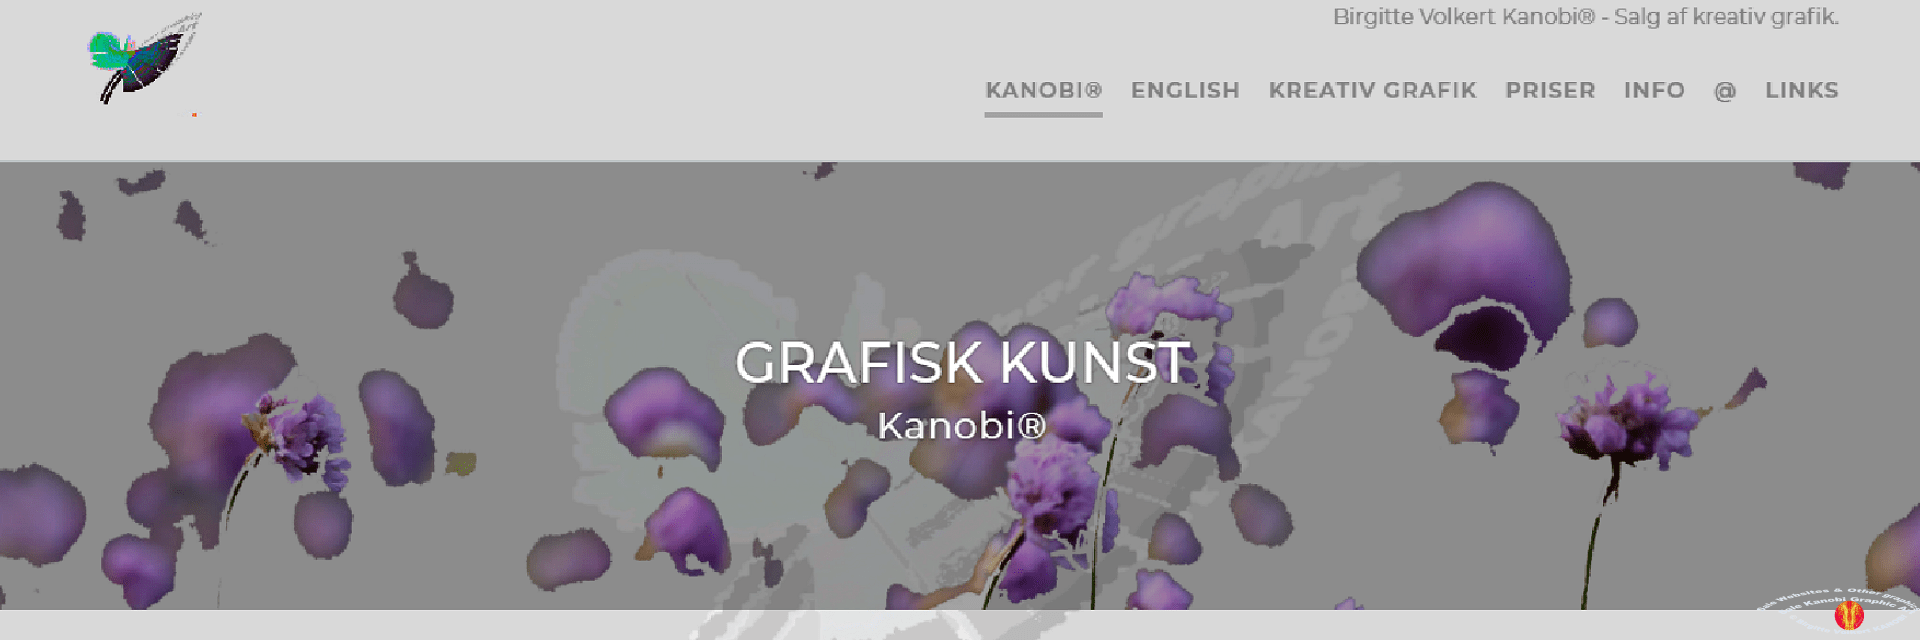 Link Birgitte Volkert Kanobi® frontpage screenprint.